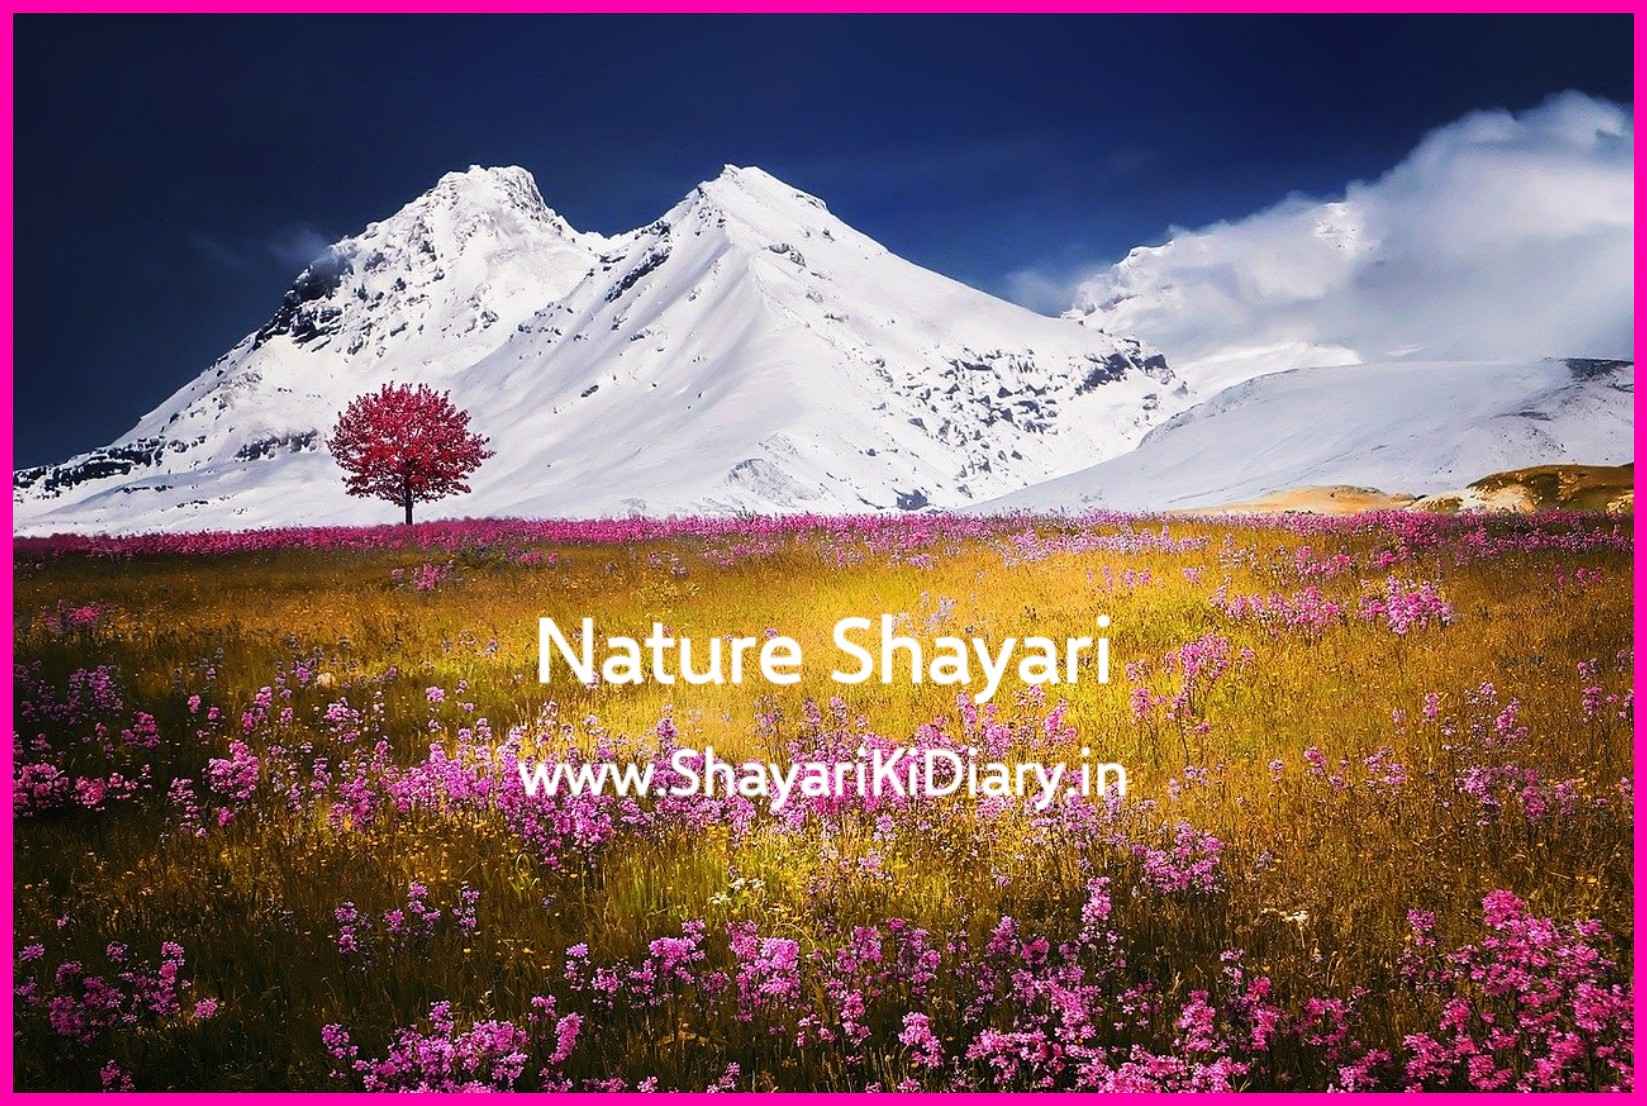 Nature Shayari